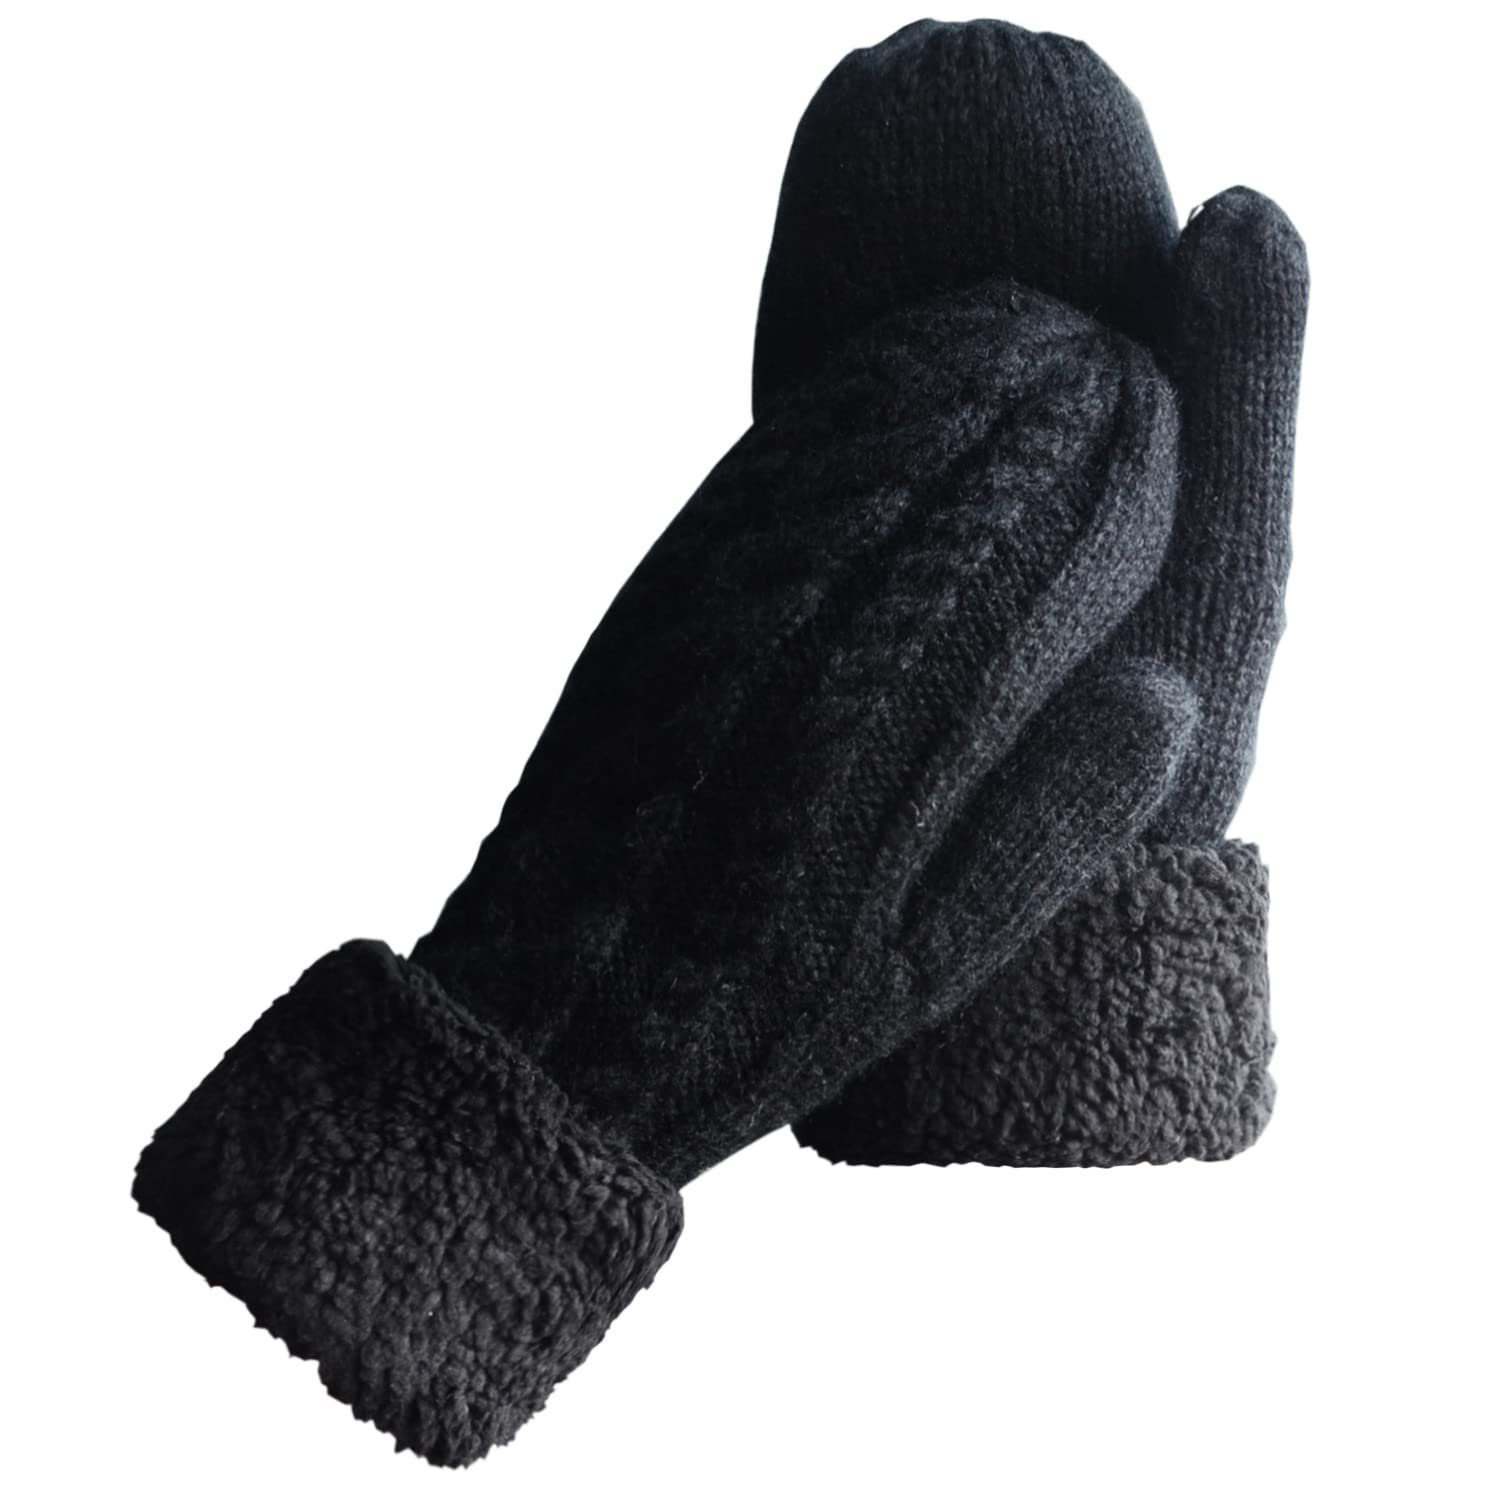 YYV Strickhandschuhe Damen Winterhandschuhe Warm Lining,Gemütliche Wolle Strick Dicke Handschuhe Fäustlinge schwarz | Strickhandschuhe